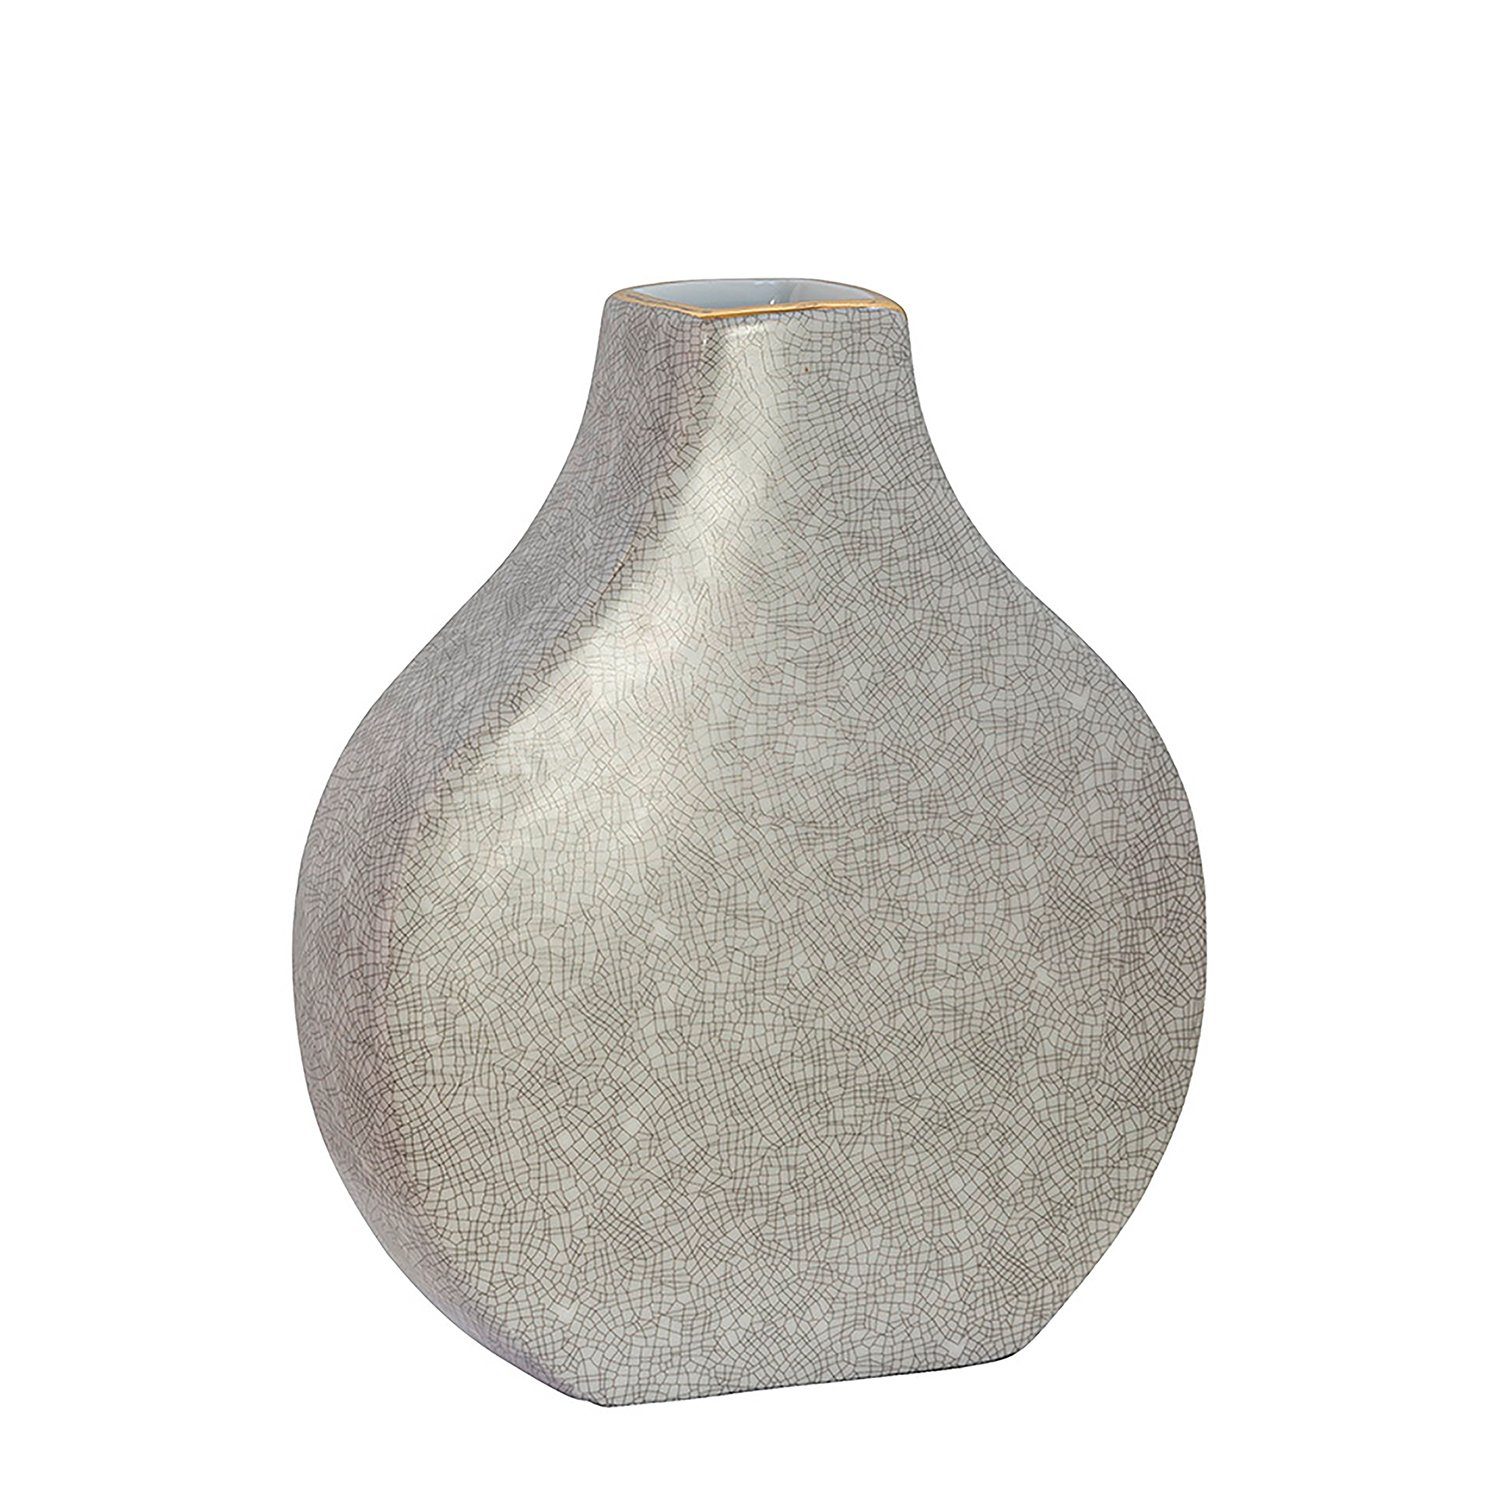 Fink Dekovase Vase MINTA - hellgrau - Porzellan - H.23cm x B.19,5cm x T.6cm, Handbemalter goldfarbener Rand - Durchmesser Öffnung ca. 4x4,5 cm